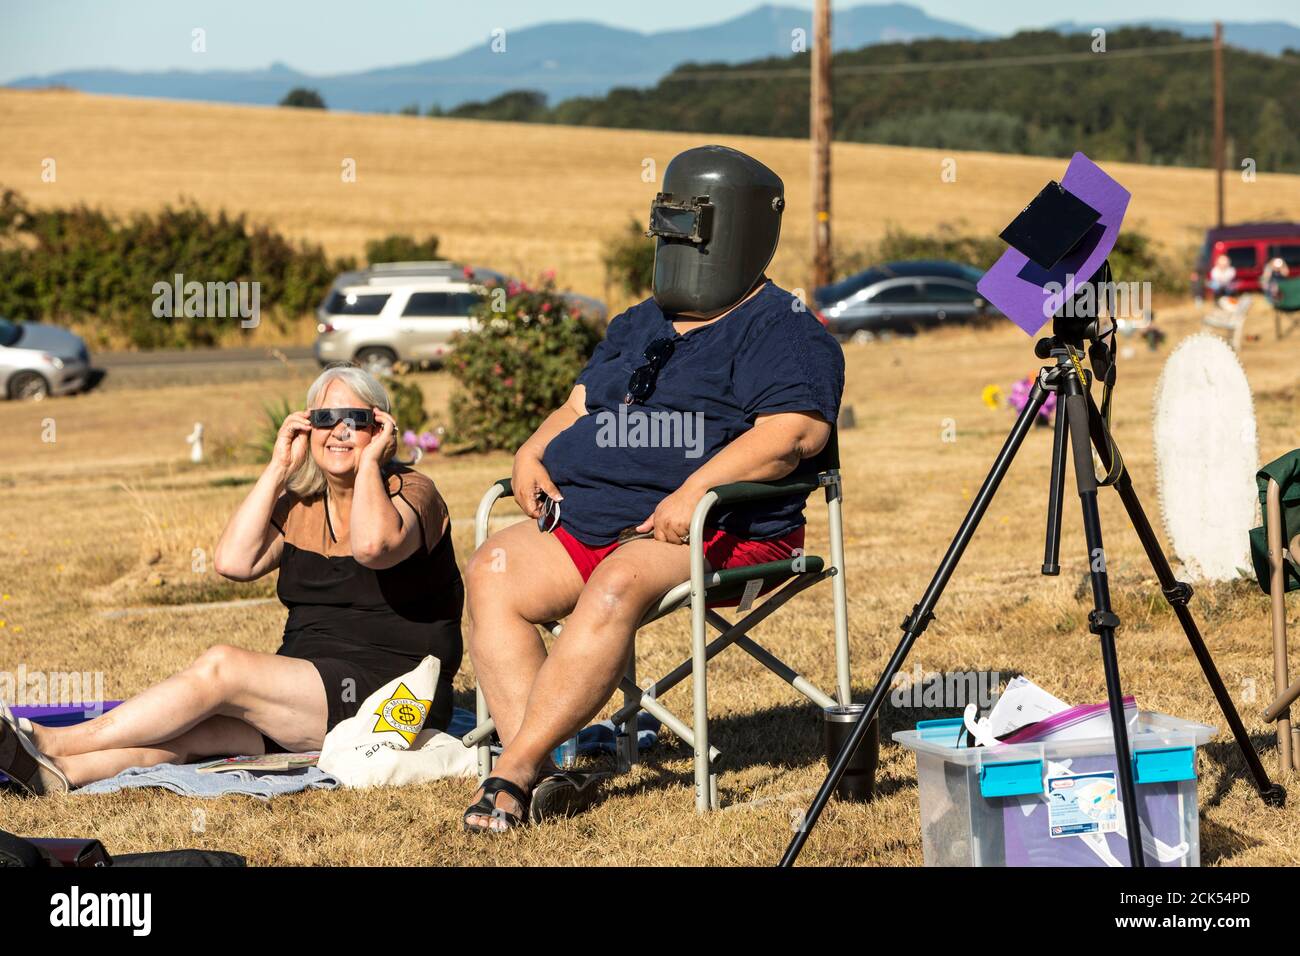 Touristes regardant l'éclipse solaire d'août 21,2017 près de l'indépendance Oregon, États-Unis. Banque D'Images